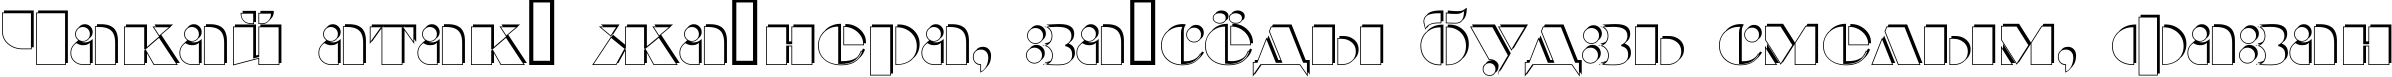 Пример написания шрифтом a_BraggaOtlSh текста на белорусском